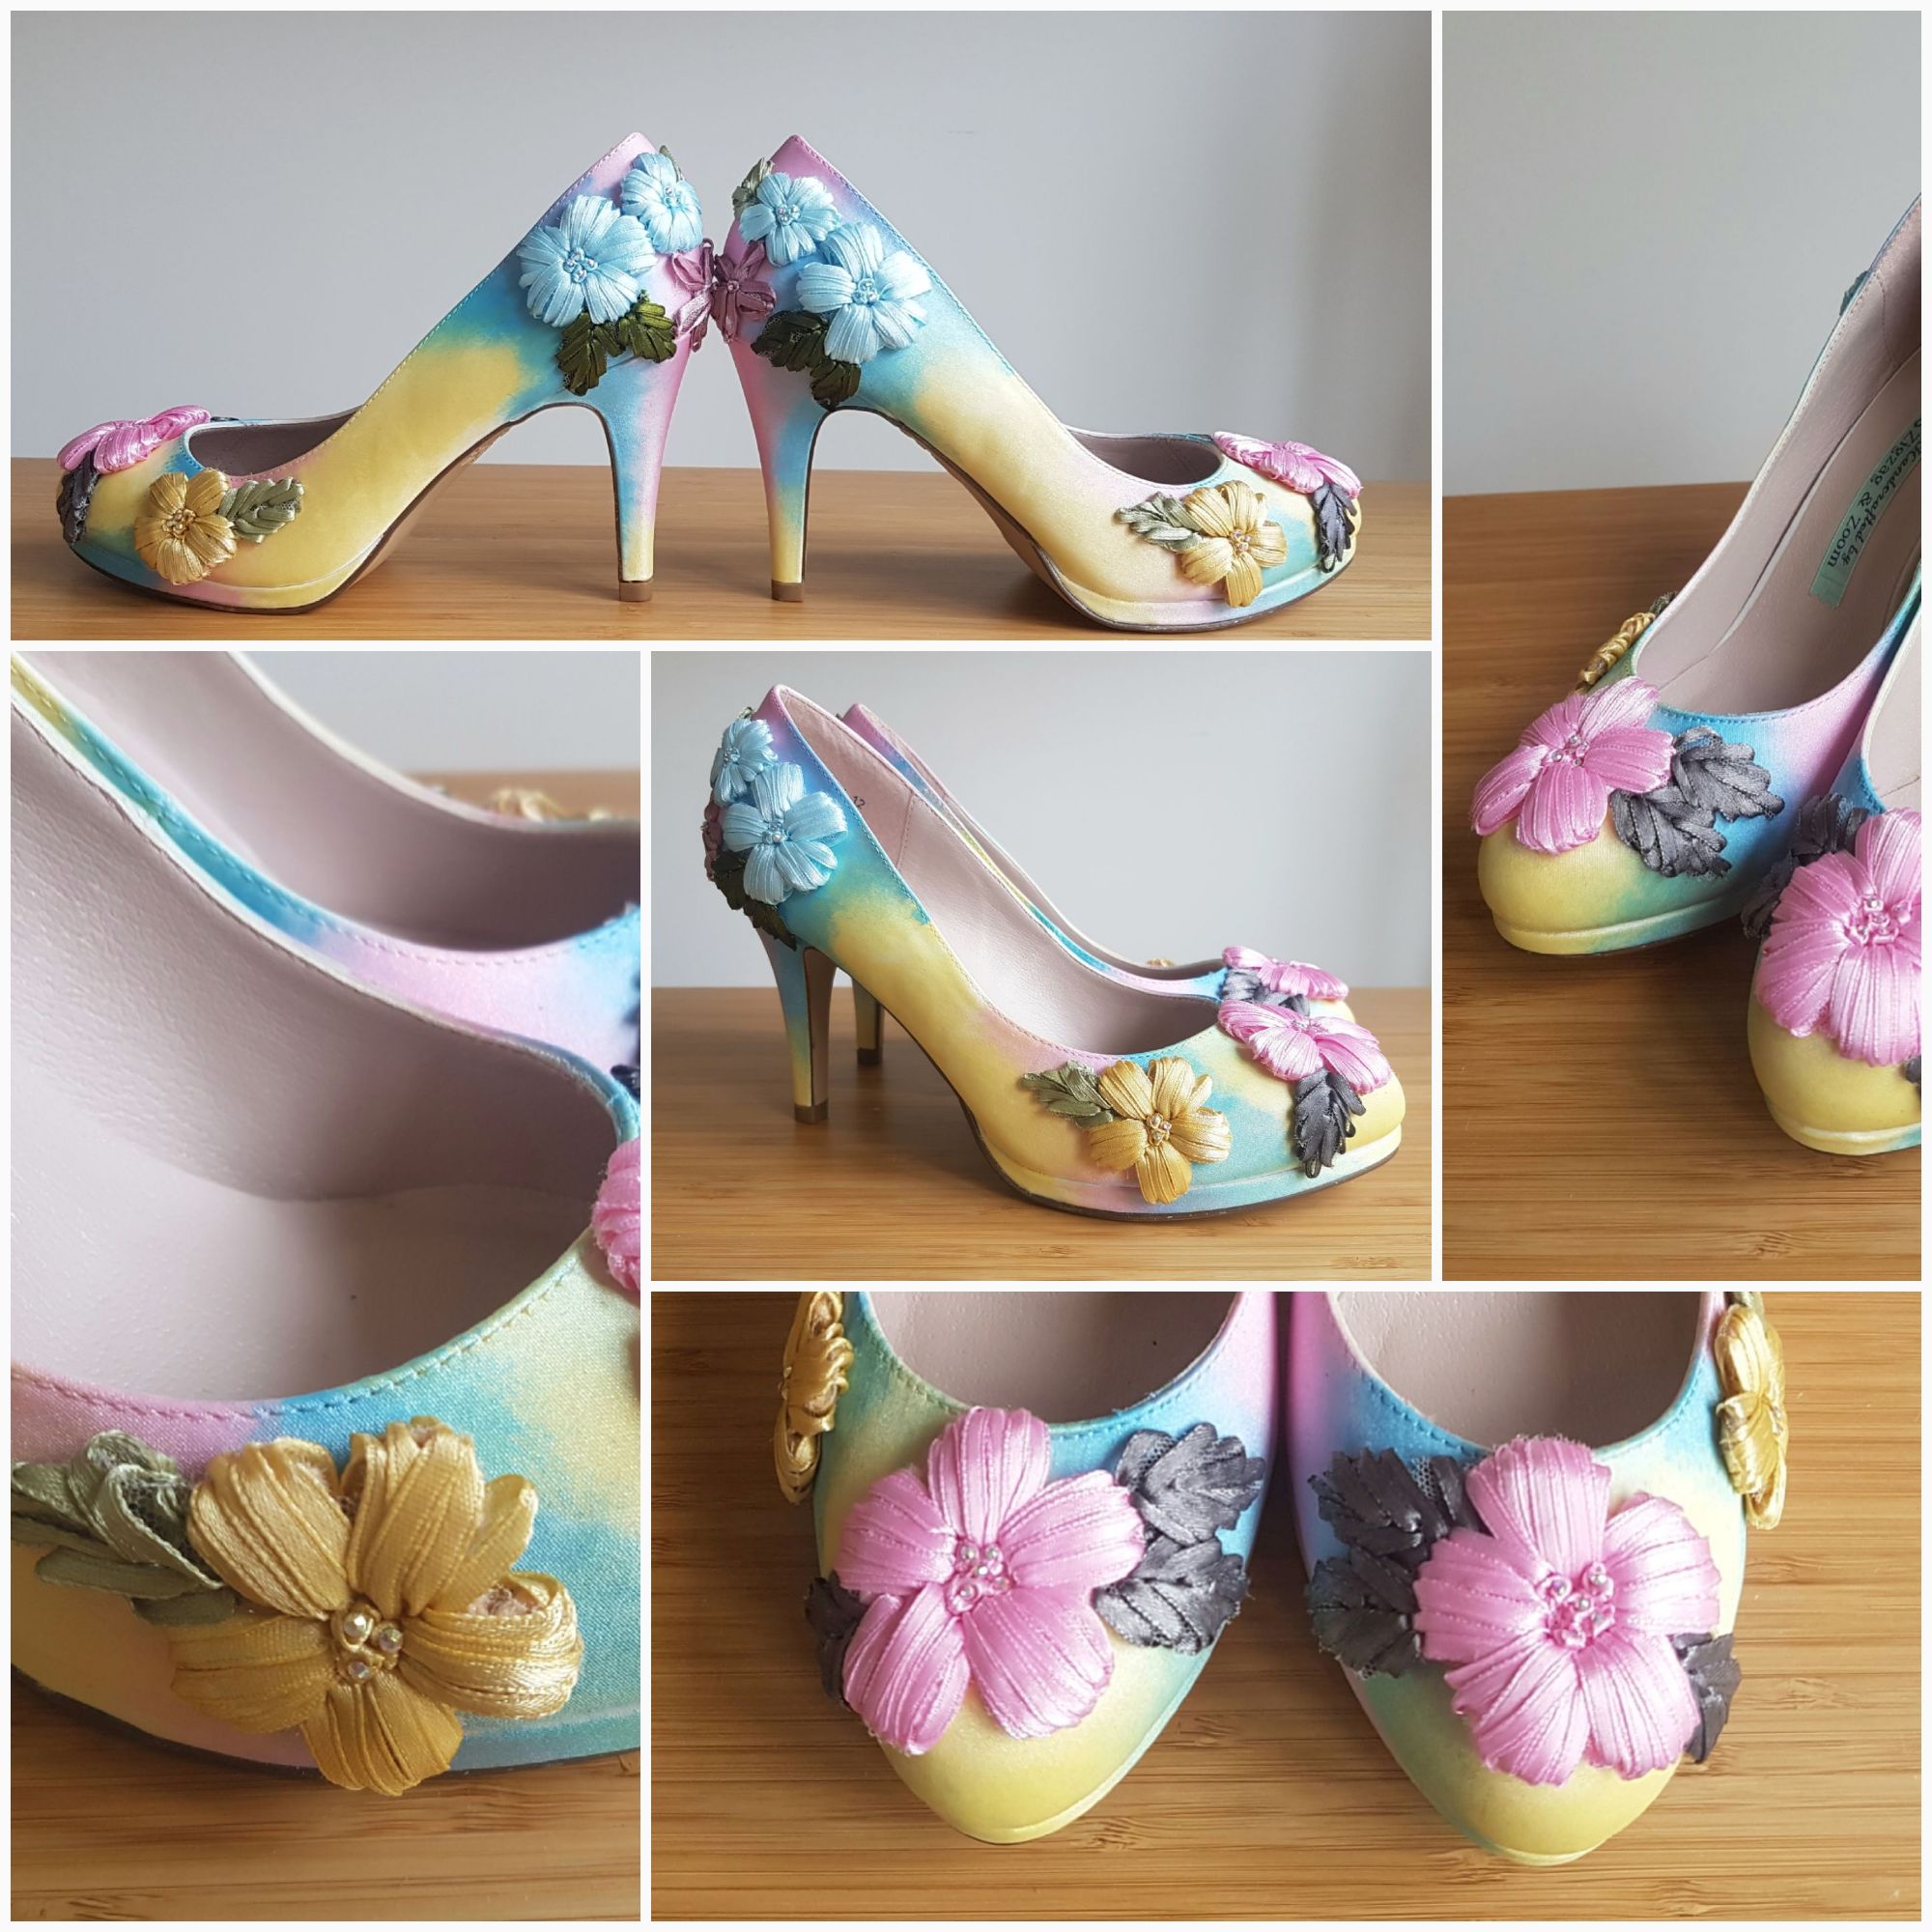 Handpainted pastel floral shoes